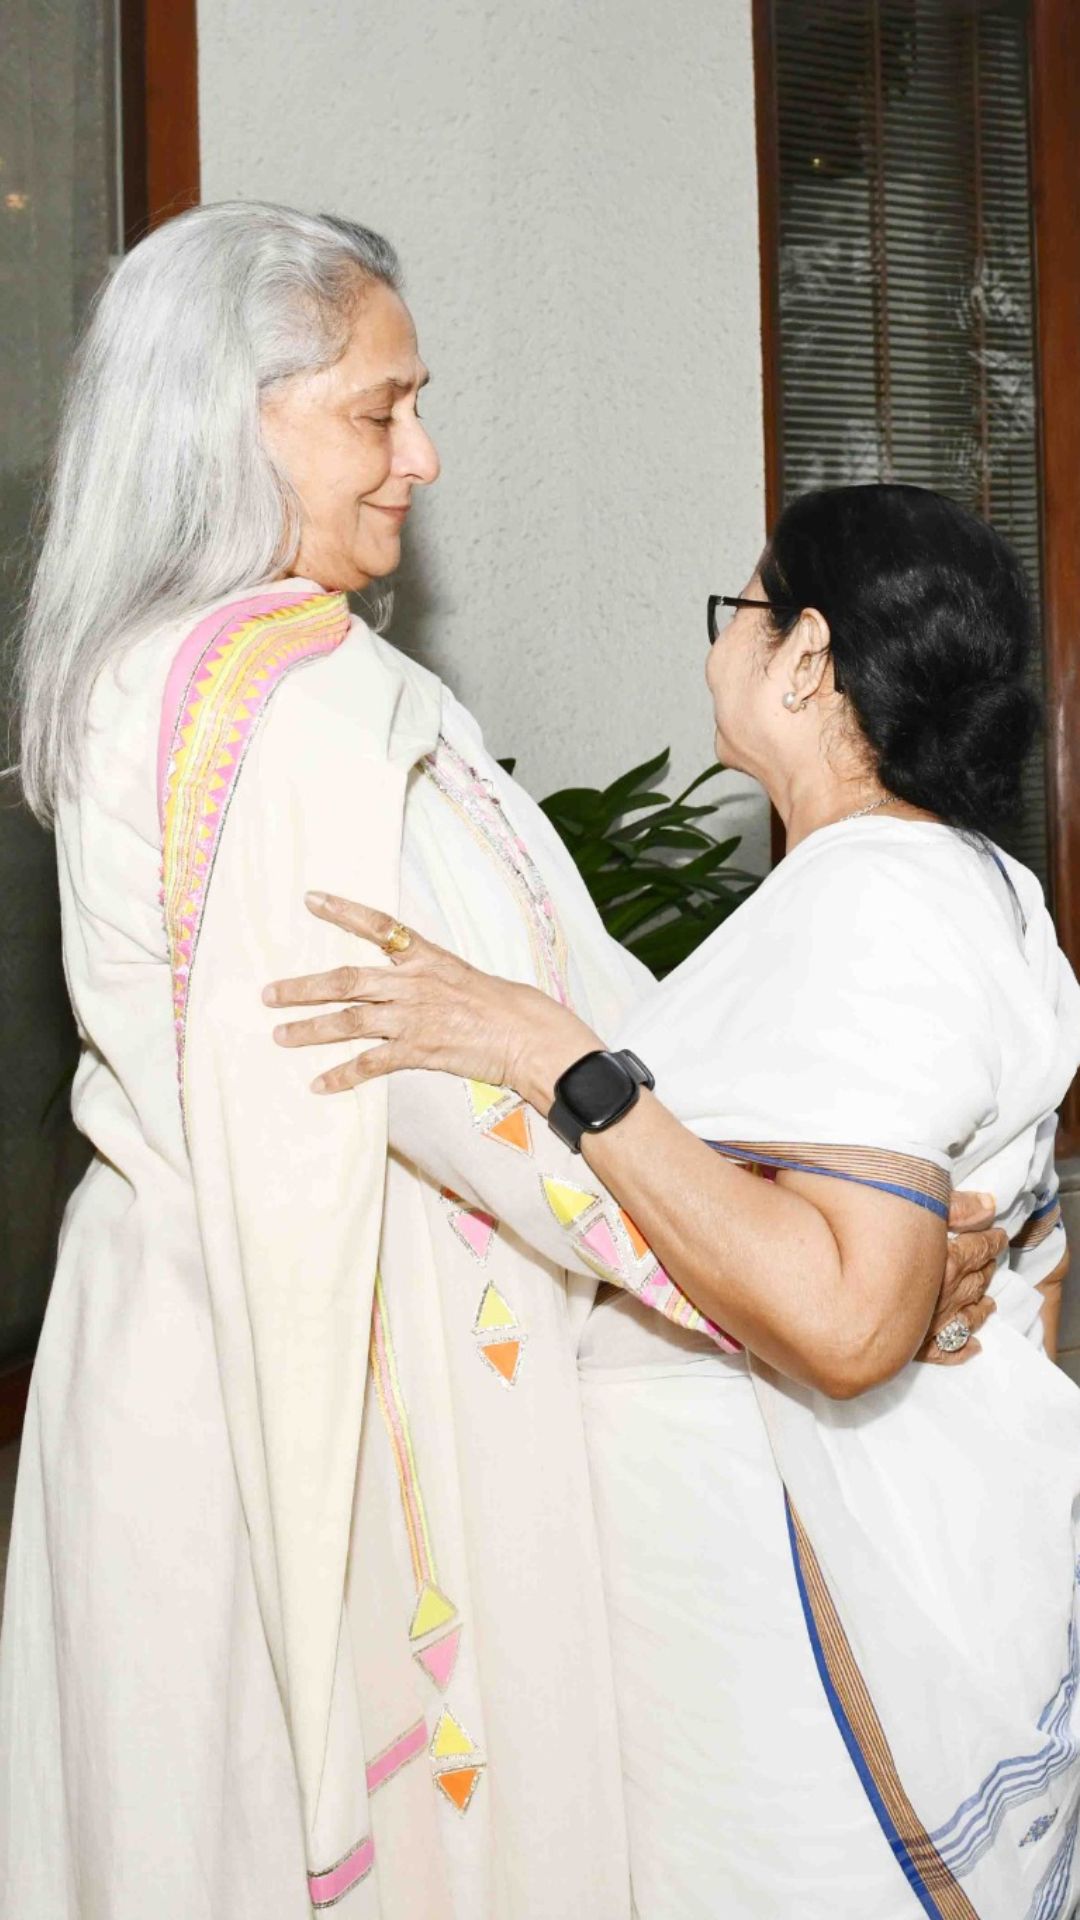 बच्चन फैमिली के साथ रक्षाबंधन सेलिब्रेट करने उनके घर पहुंचीं CM ममता, सामने आईं तस्वीरें - India TV Hindi